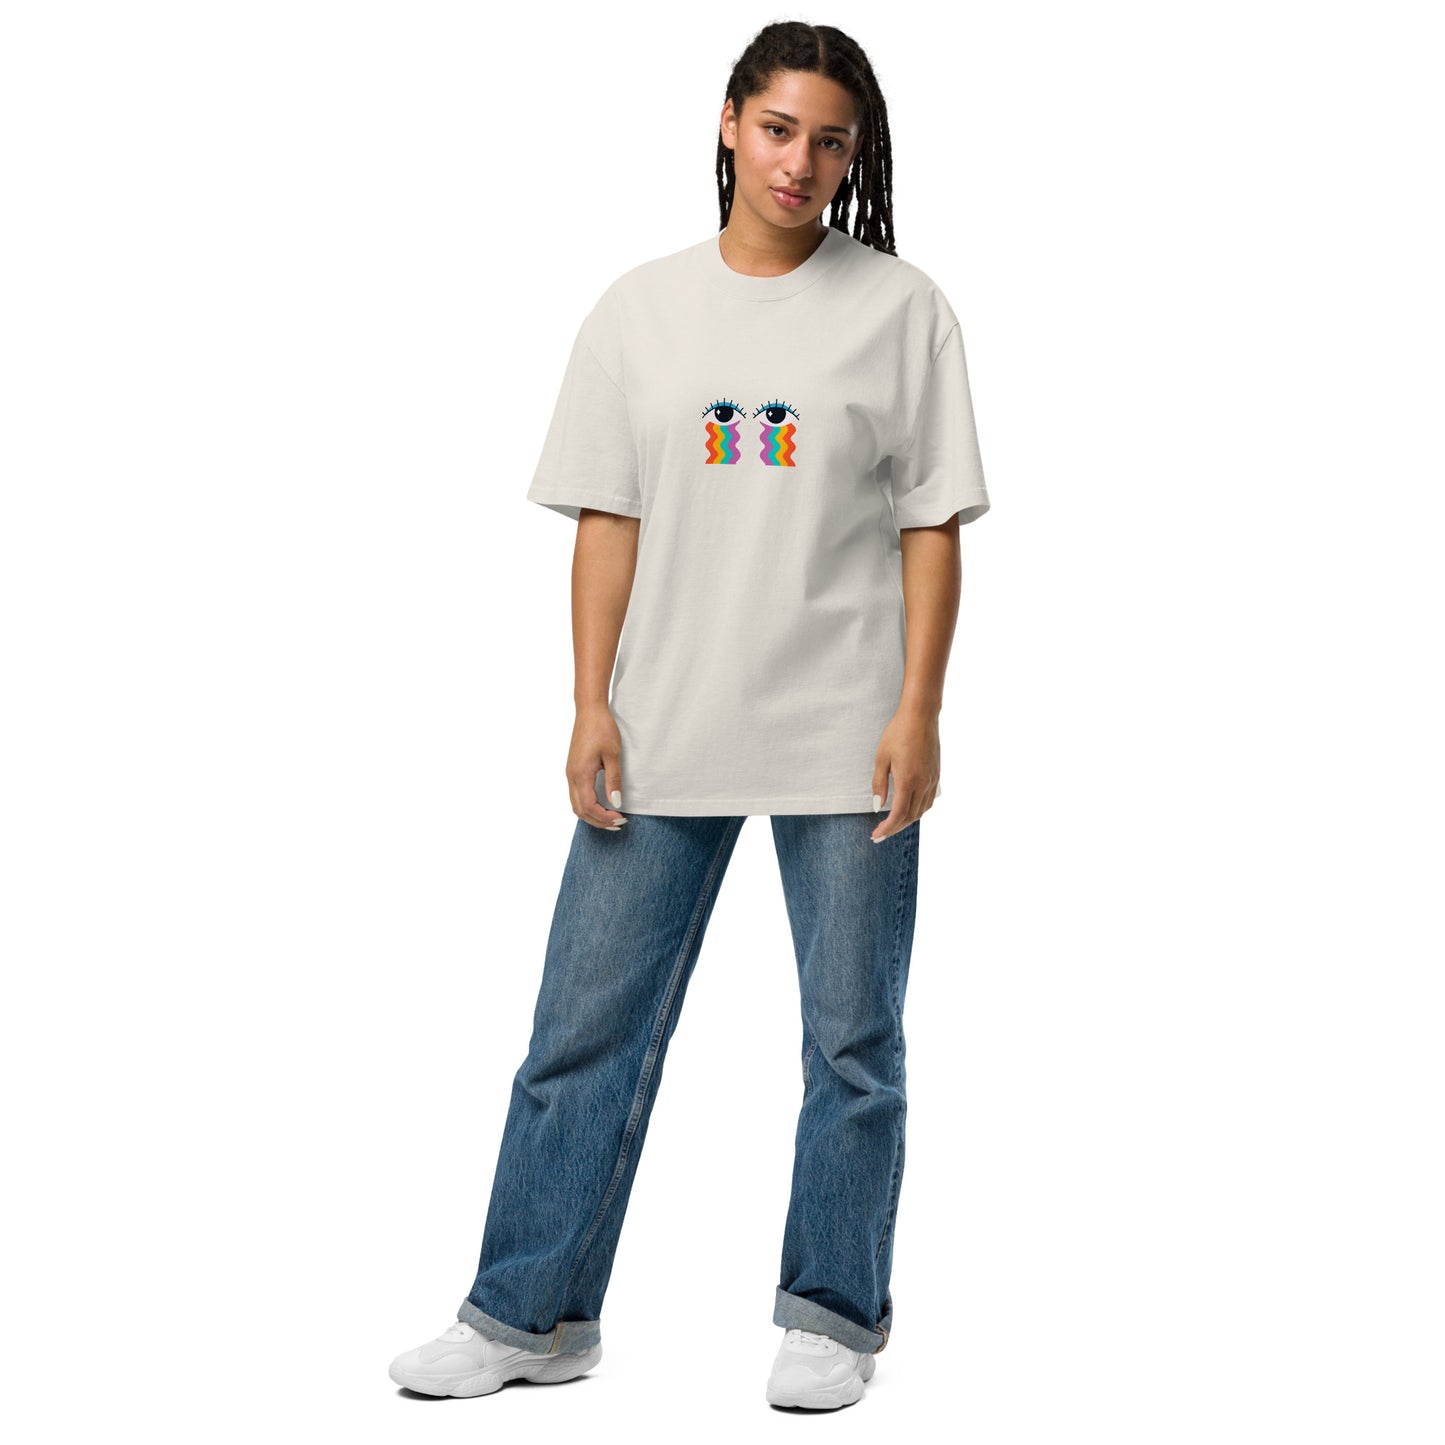 T-shirt Femme - Les Yeux Arc-En-Ciel